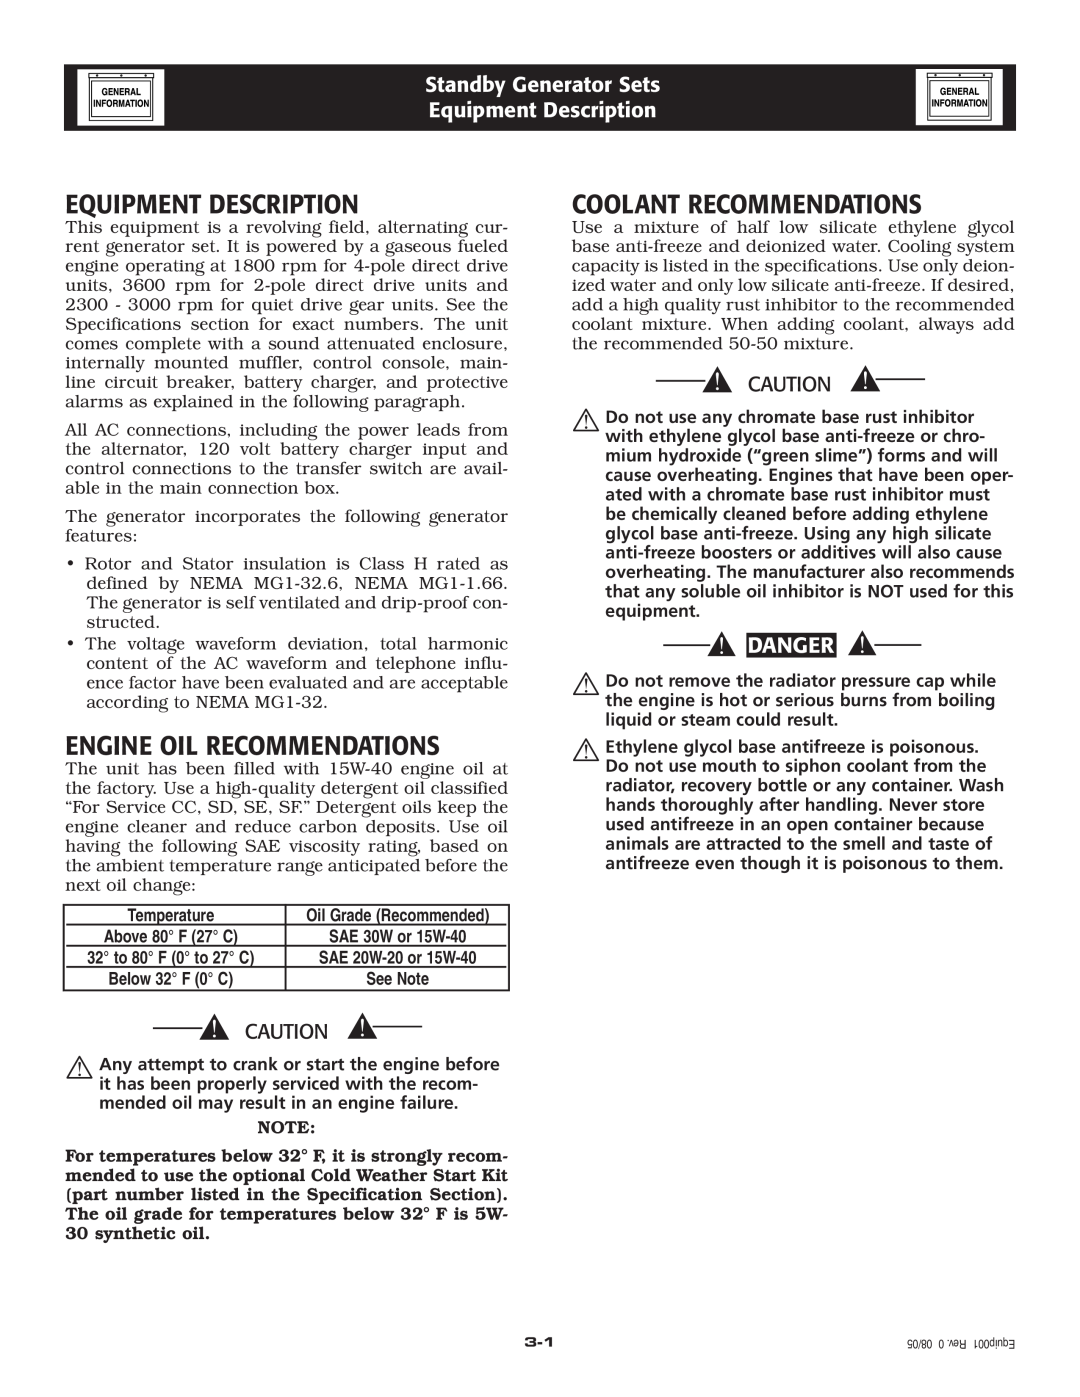 Generac Power Systems 005223-0 Equipment Description, Engine Oil Recommendations, Coolant Recommendations, Danger 